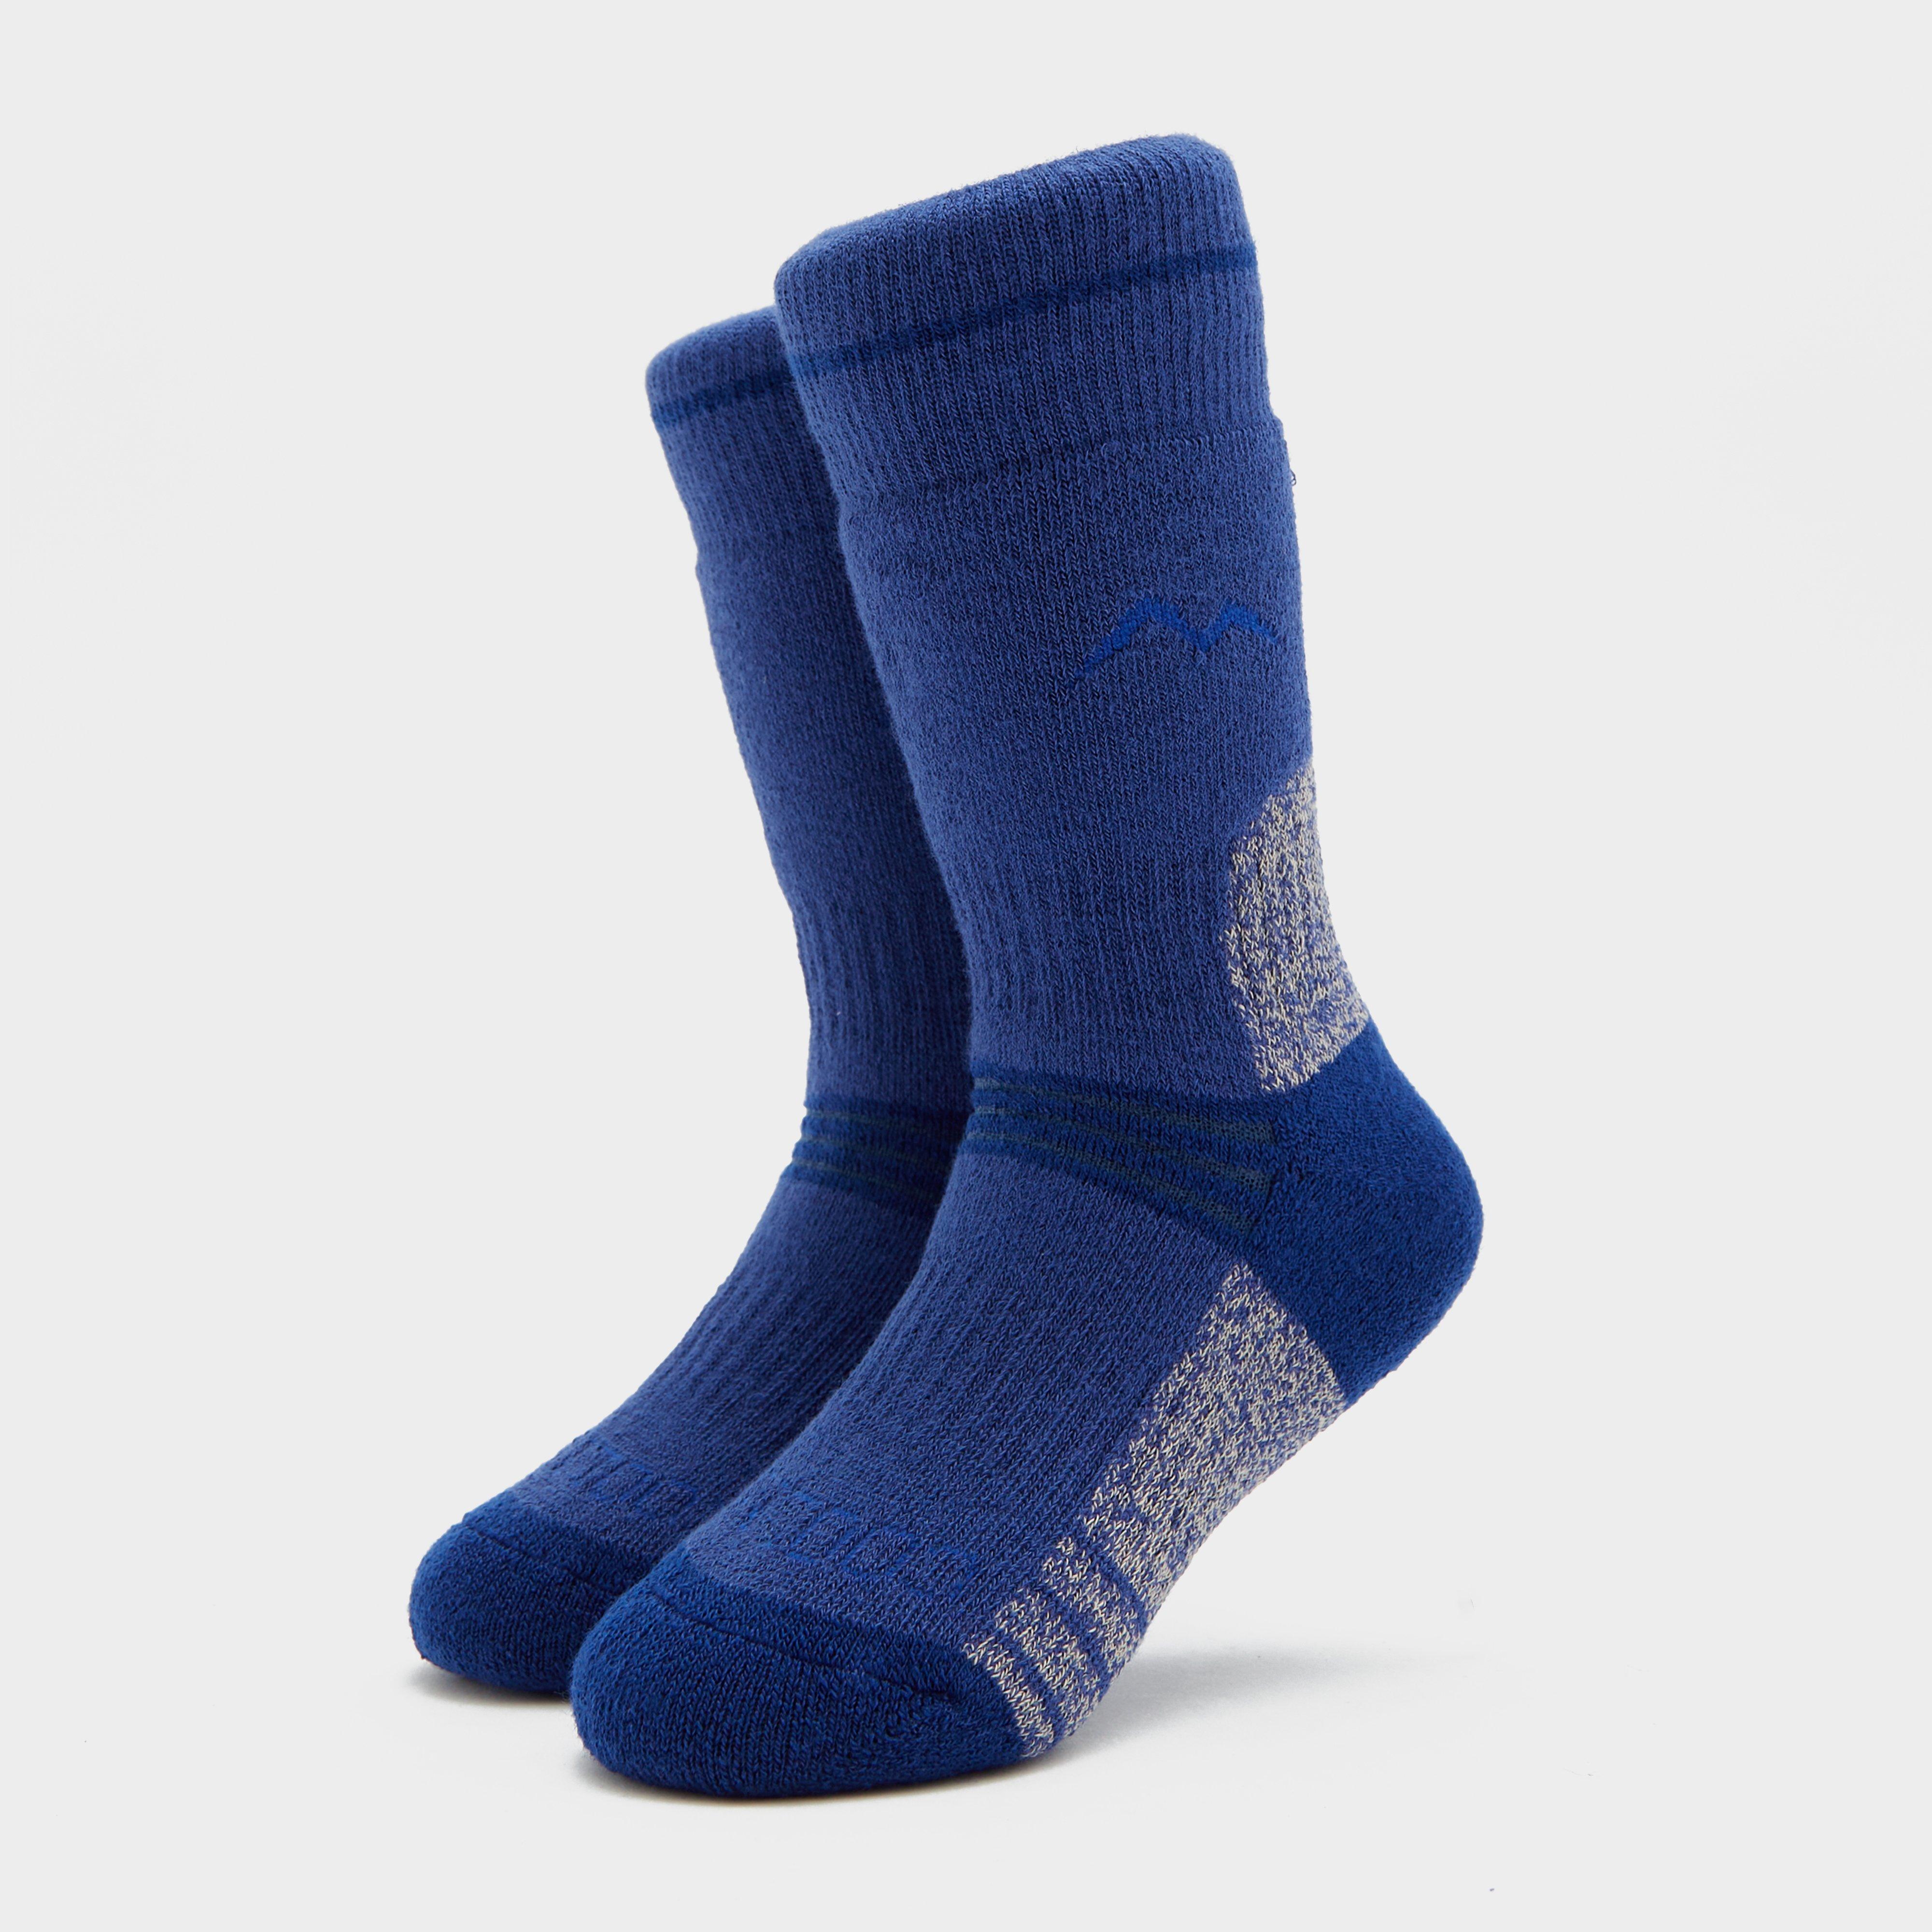 Peter Storm Boys Midweight Trekking Sock (2 Pack) - Blue/brt  Blue/brt